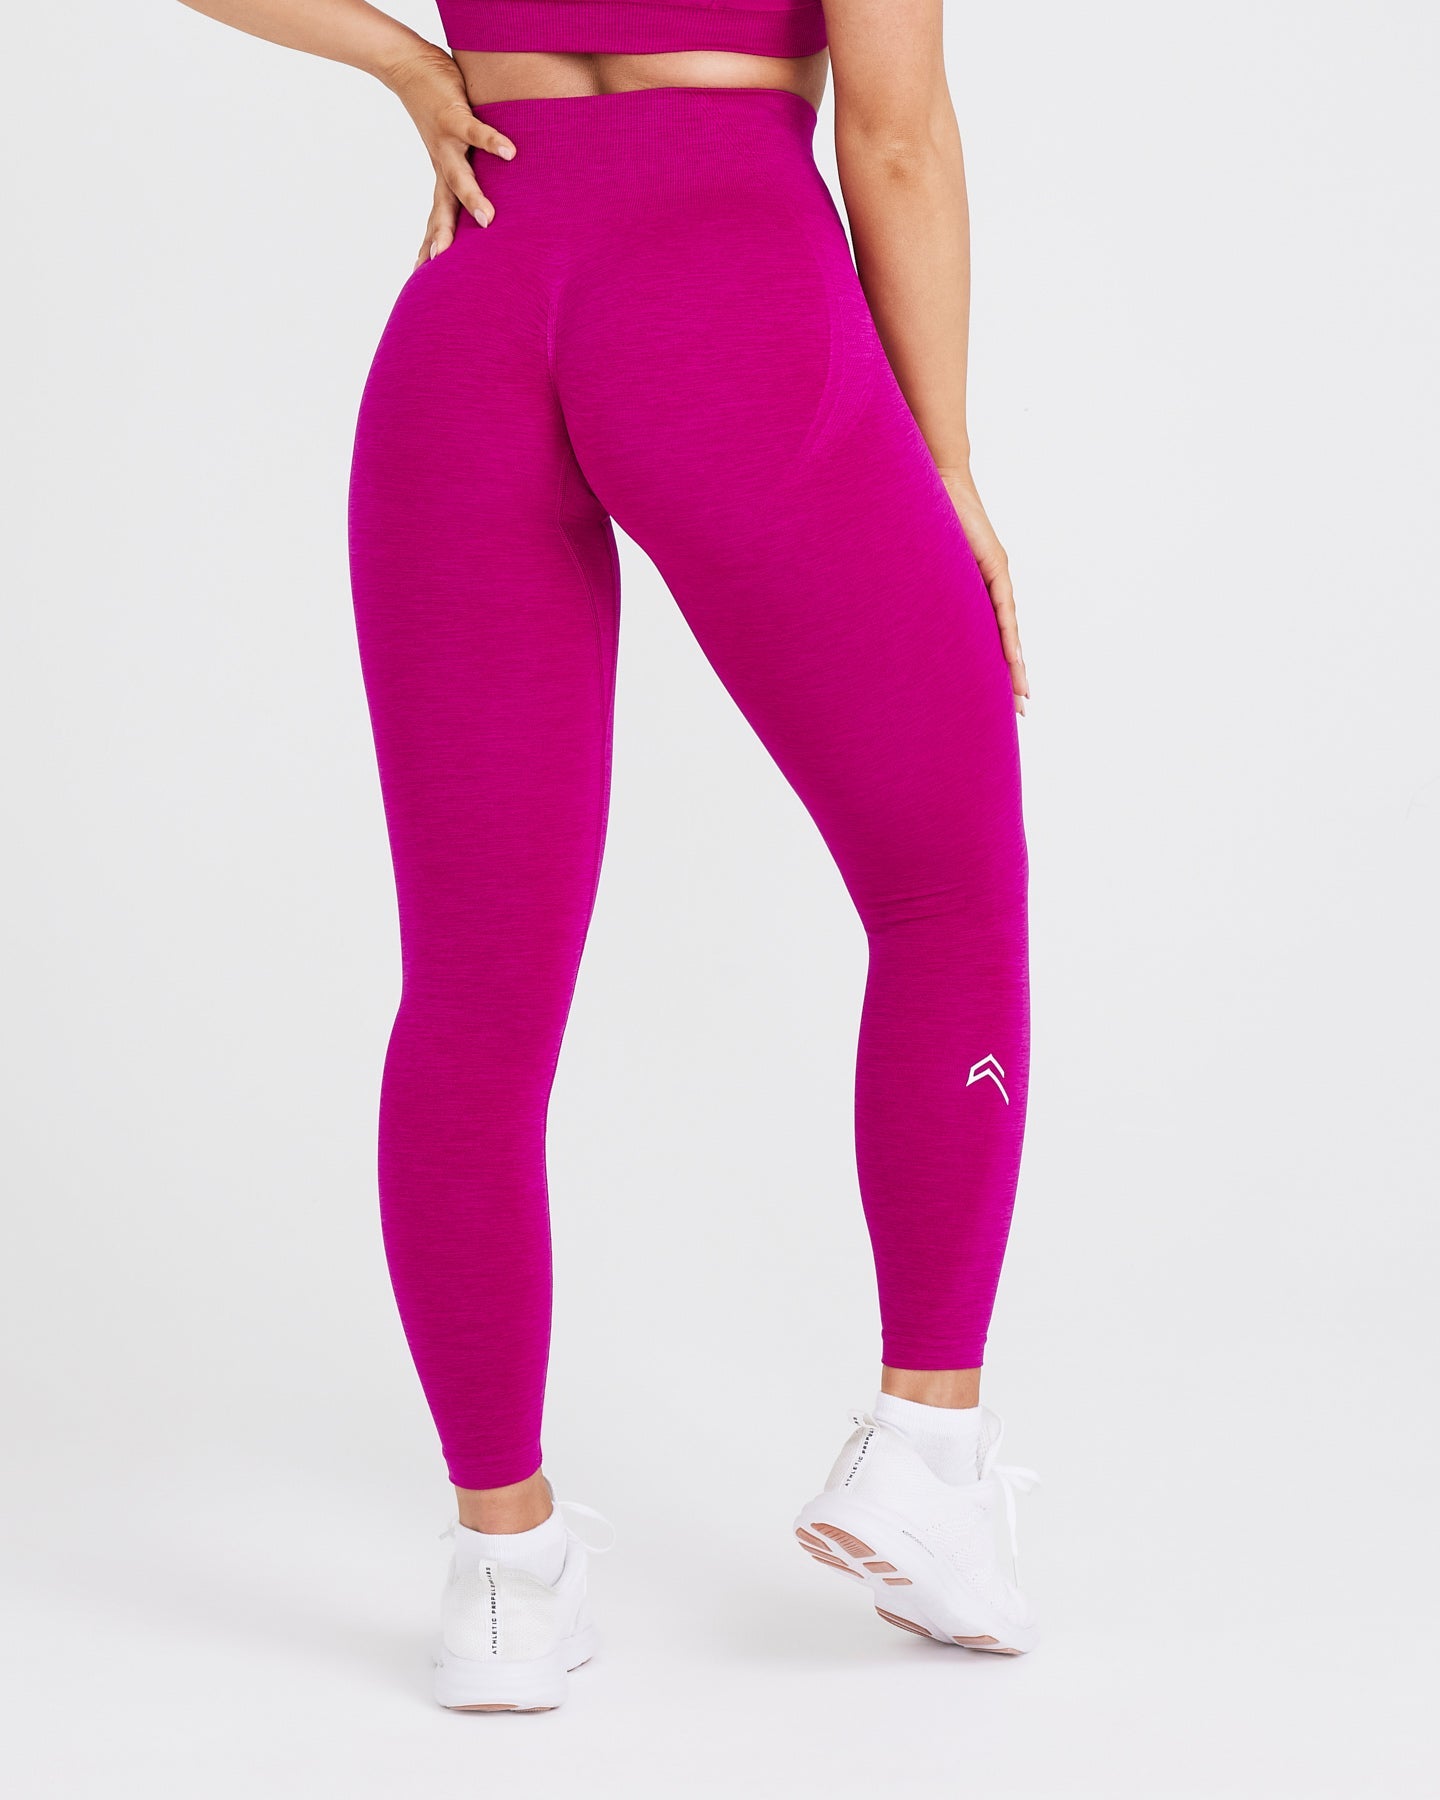 Lularoe TC Leggings Solid Fuchsia Pink Size 12-18 Yoga Waistband NEW 49789